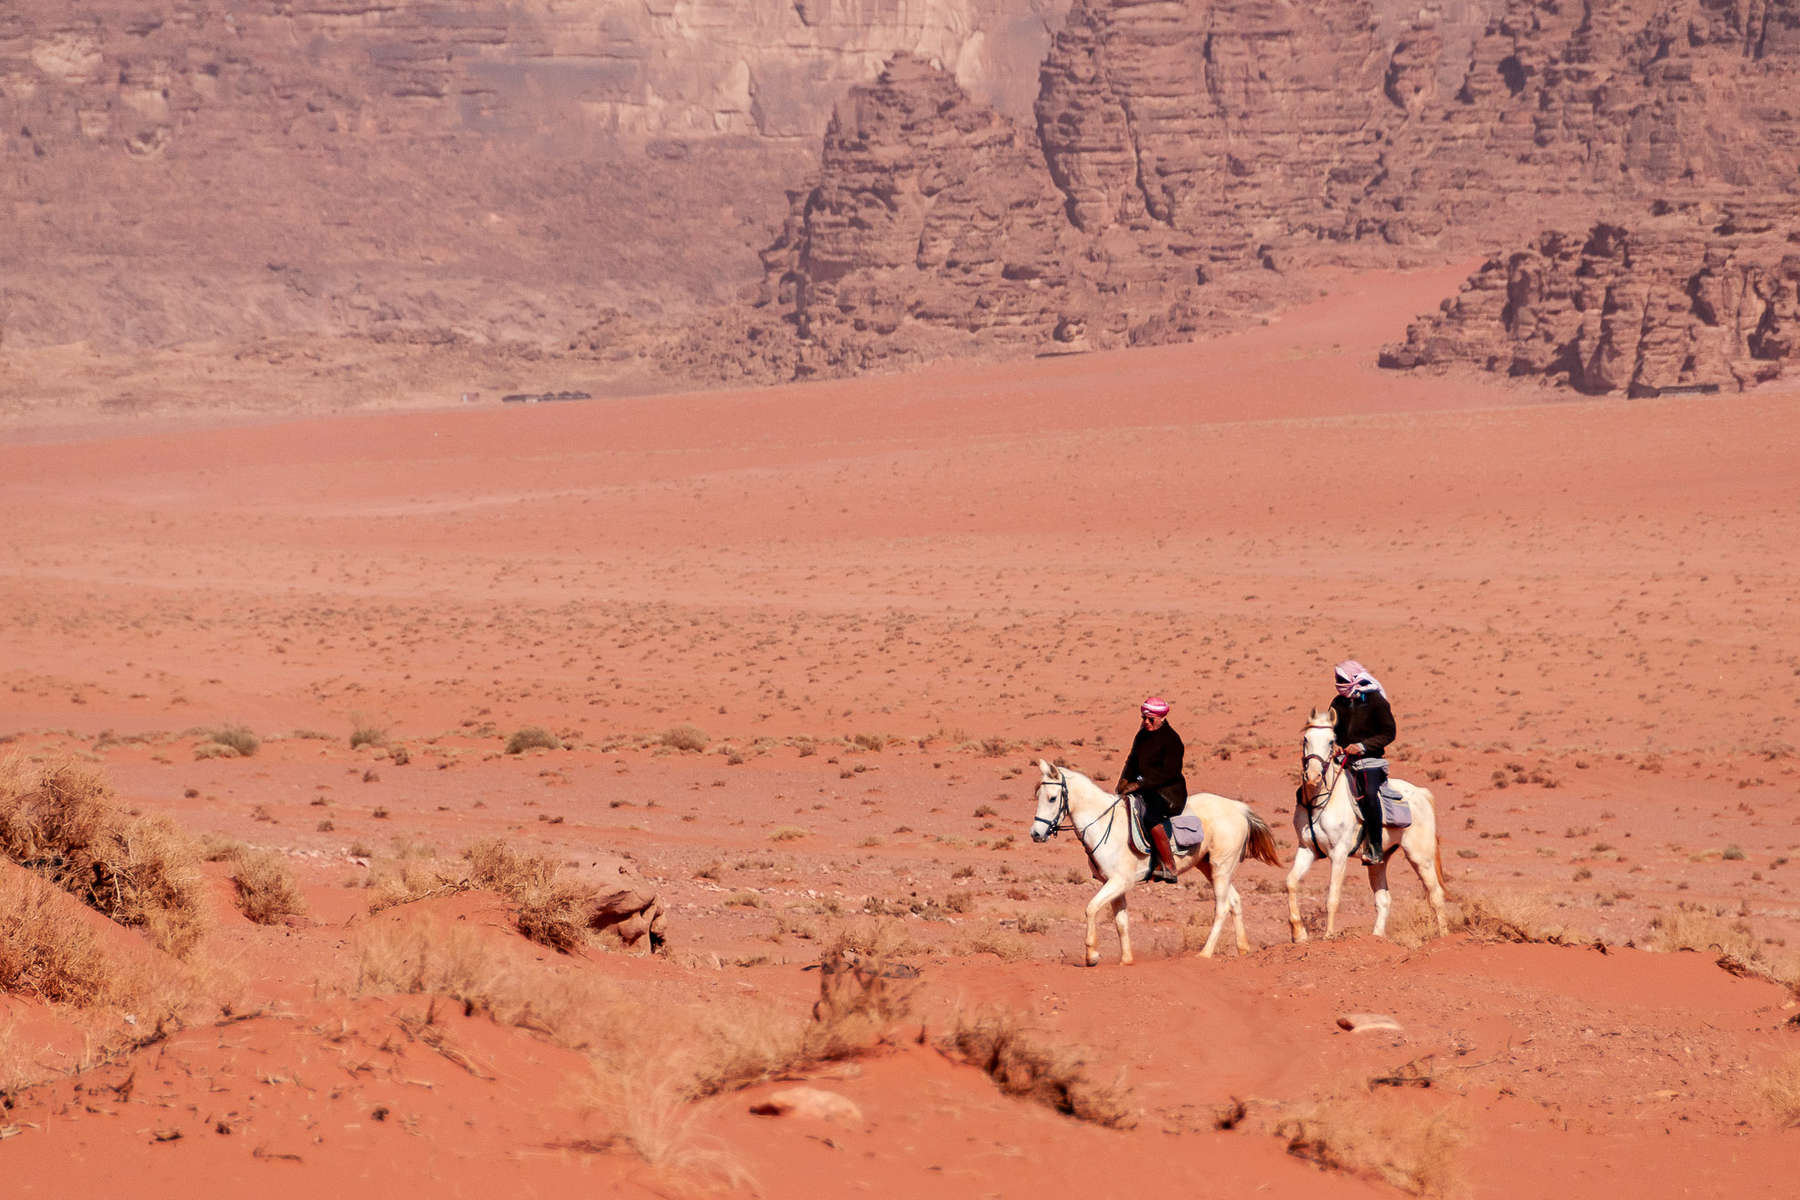 Horses and riders in the Wadi Rum desert, Jordan